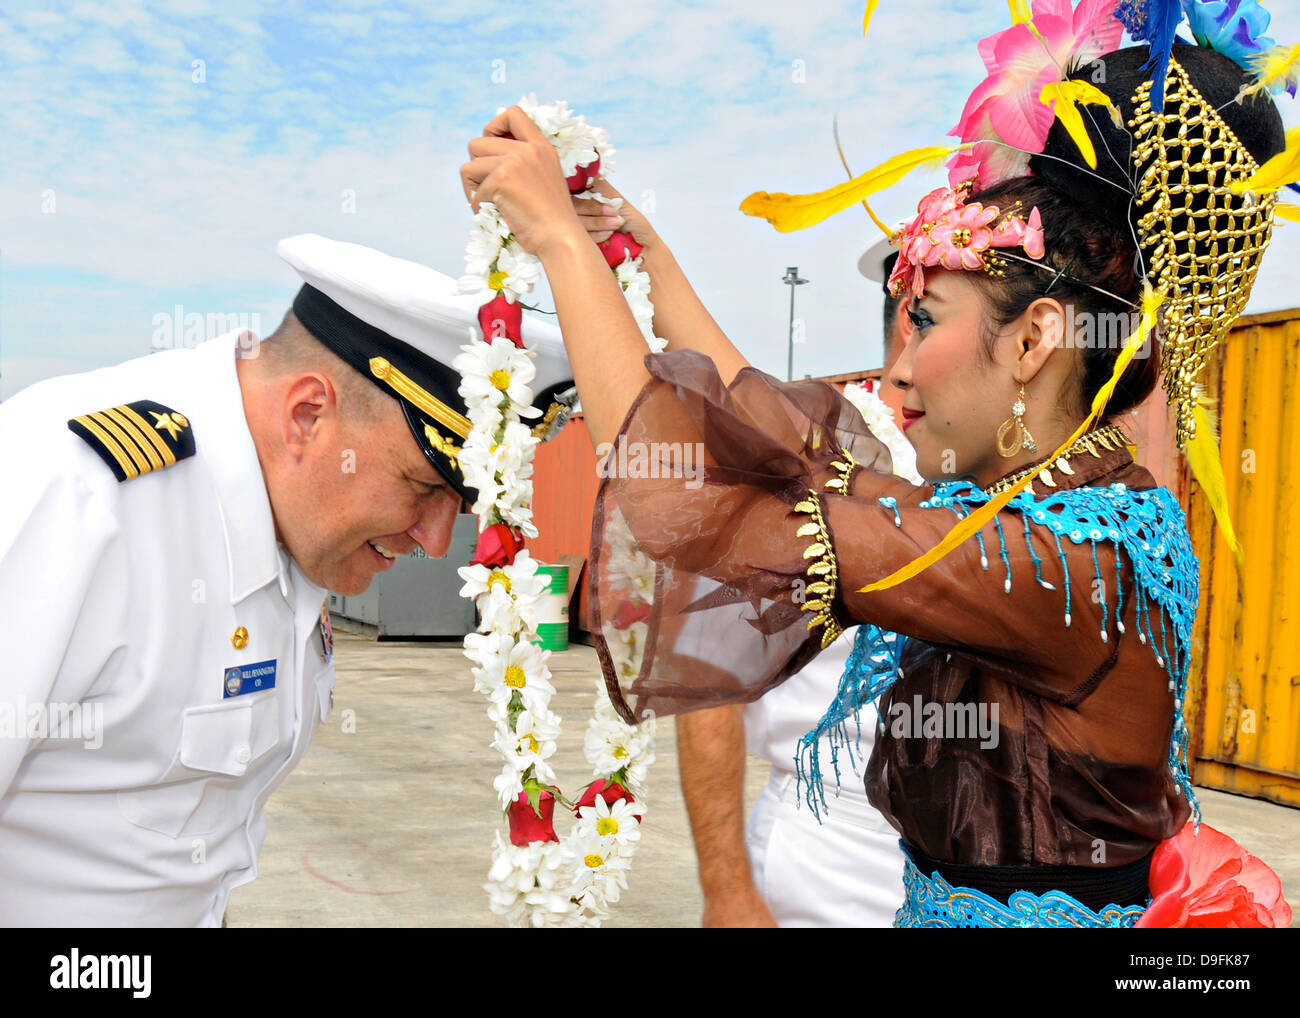 El capitán de la Marina estadounidense se Pennington, comandante de la séptima Flota buque insignia USS Blue Ridge es recibido con una guirnalda de flores tradicionales después de llegar a un puerto visita el 14 de junio de 2013 en Yakarta, Indonesia. Foto de stock